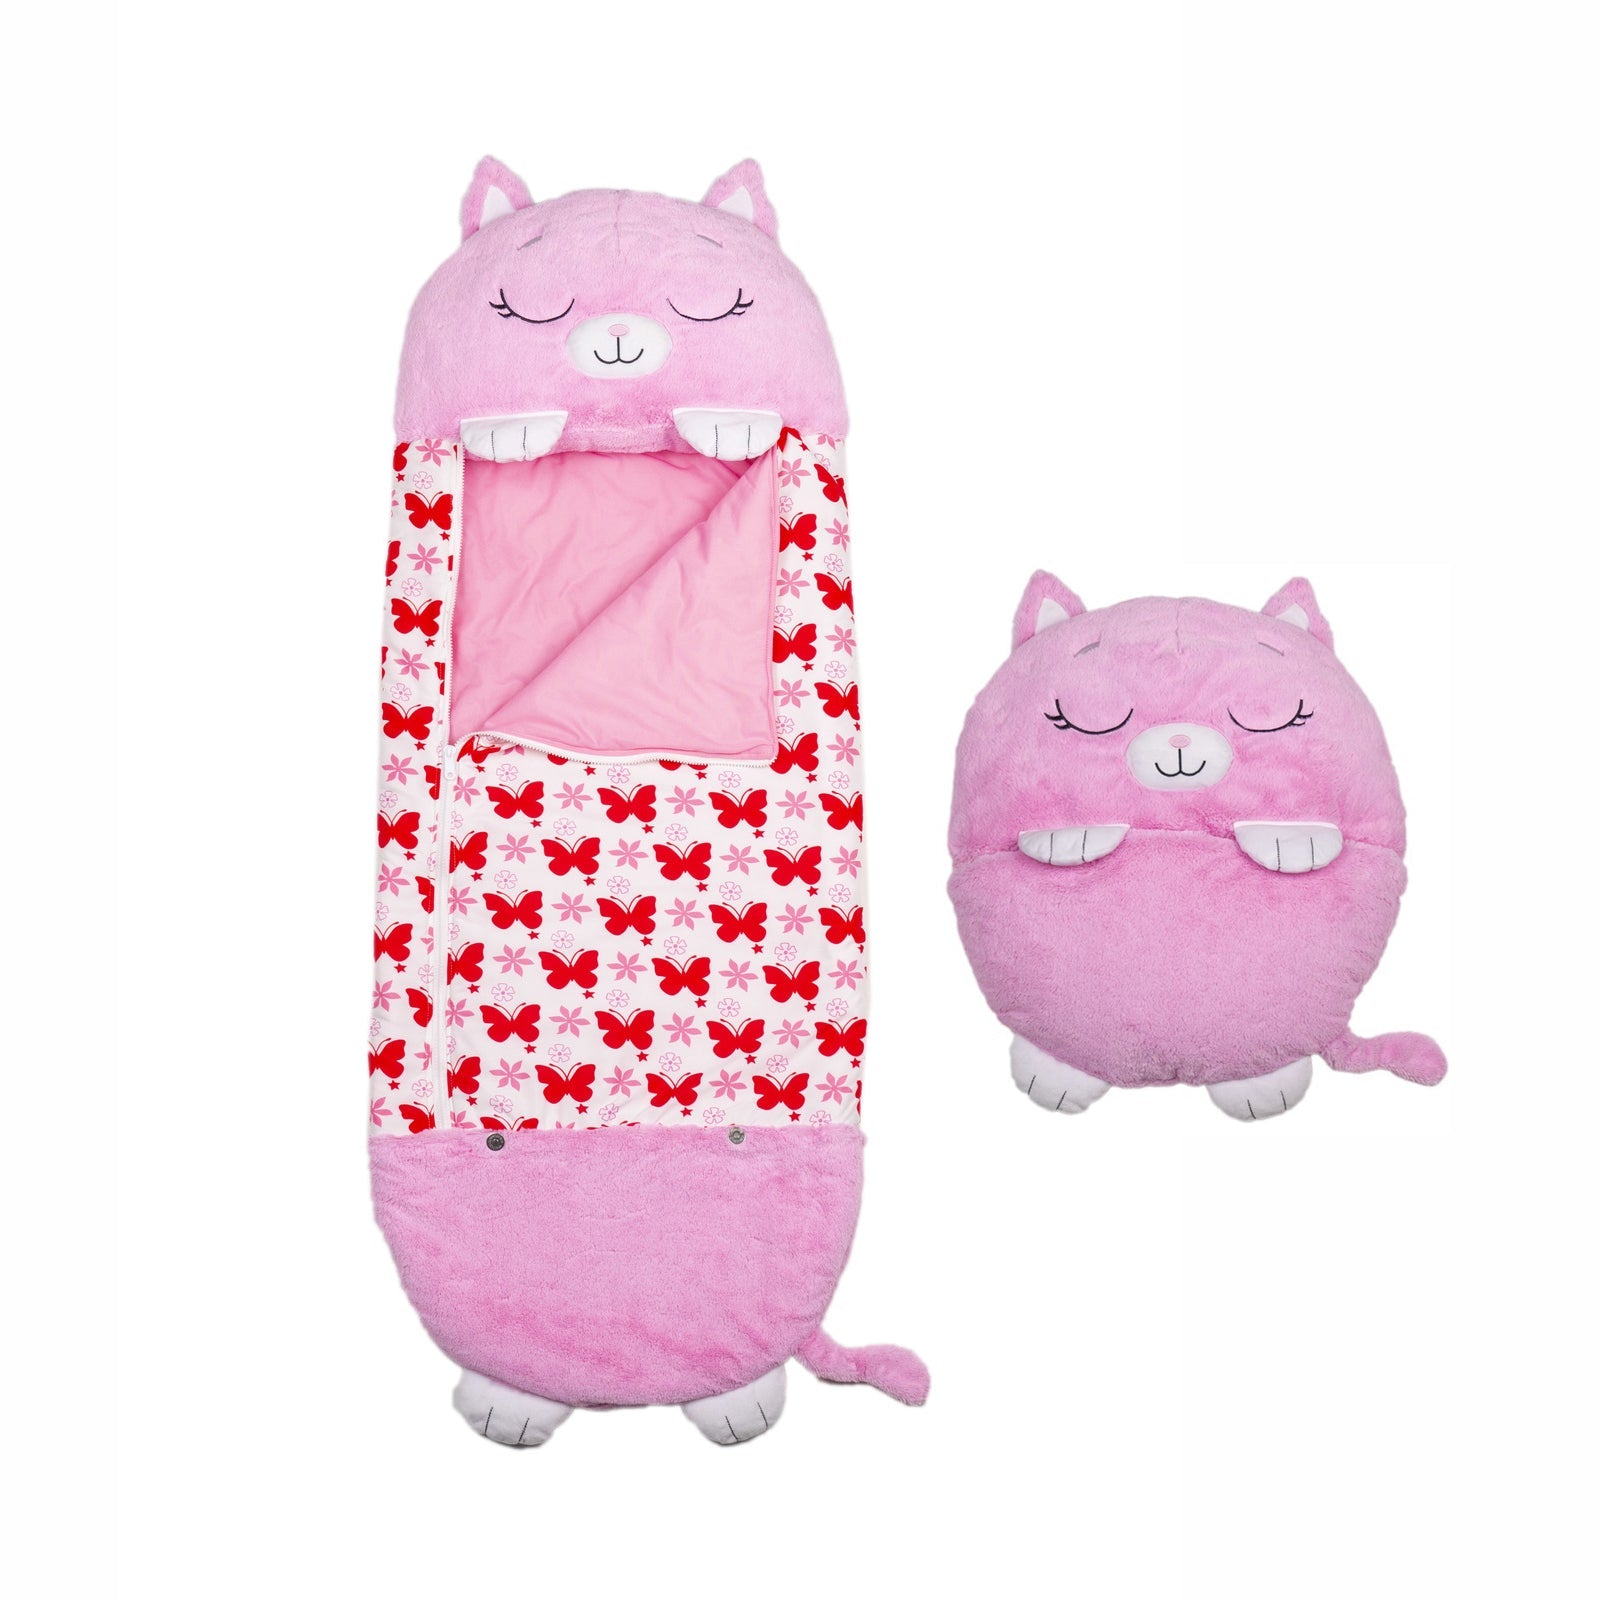 Kids Sleeping Bag Happy Children Toy Plush Pink Cat Large - Sensory Circle